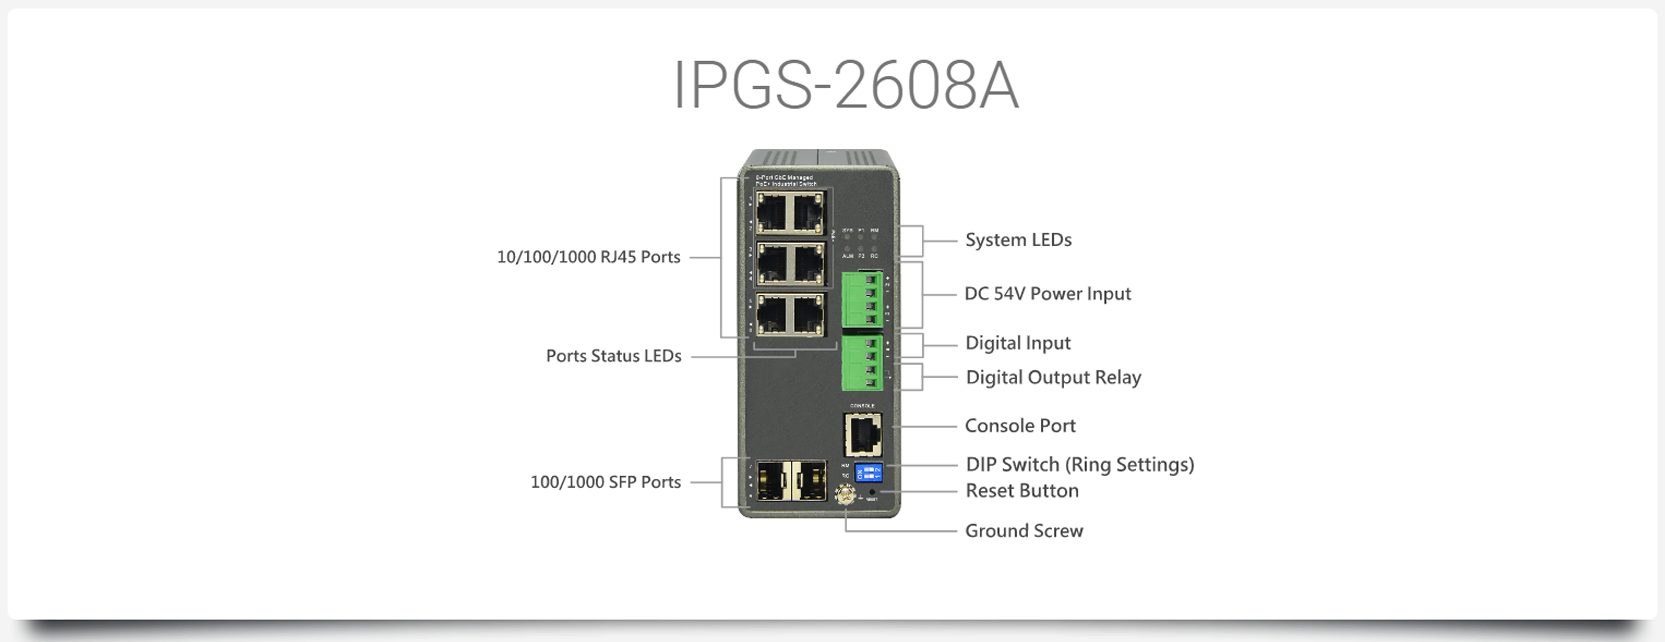 IPGS-2608A